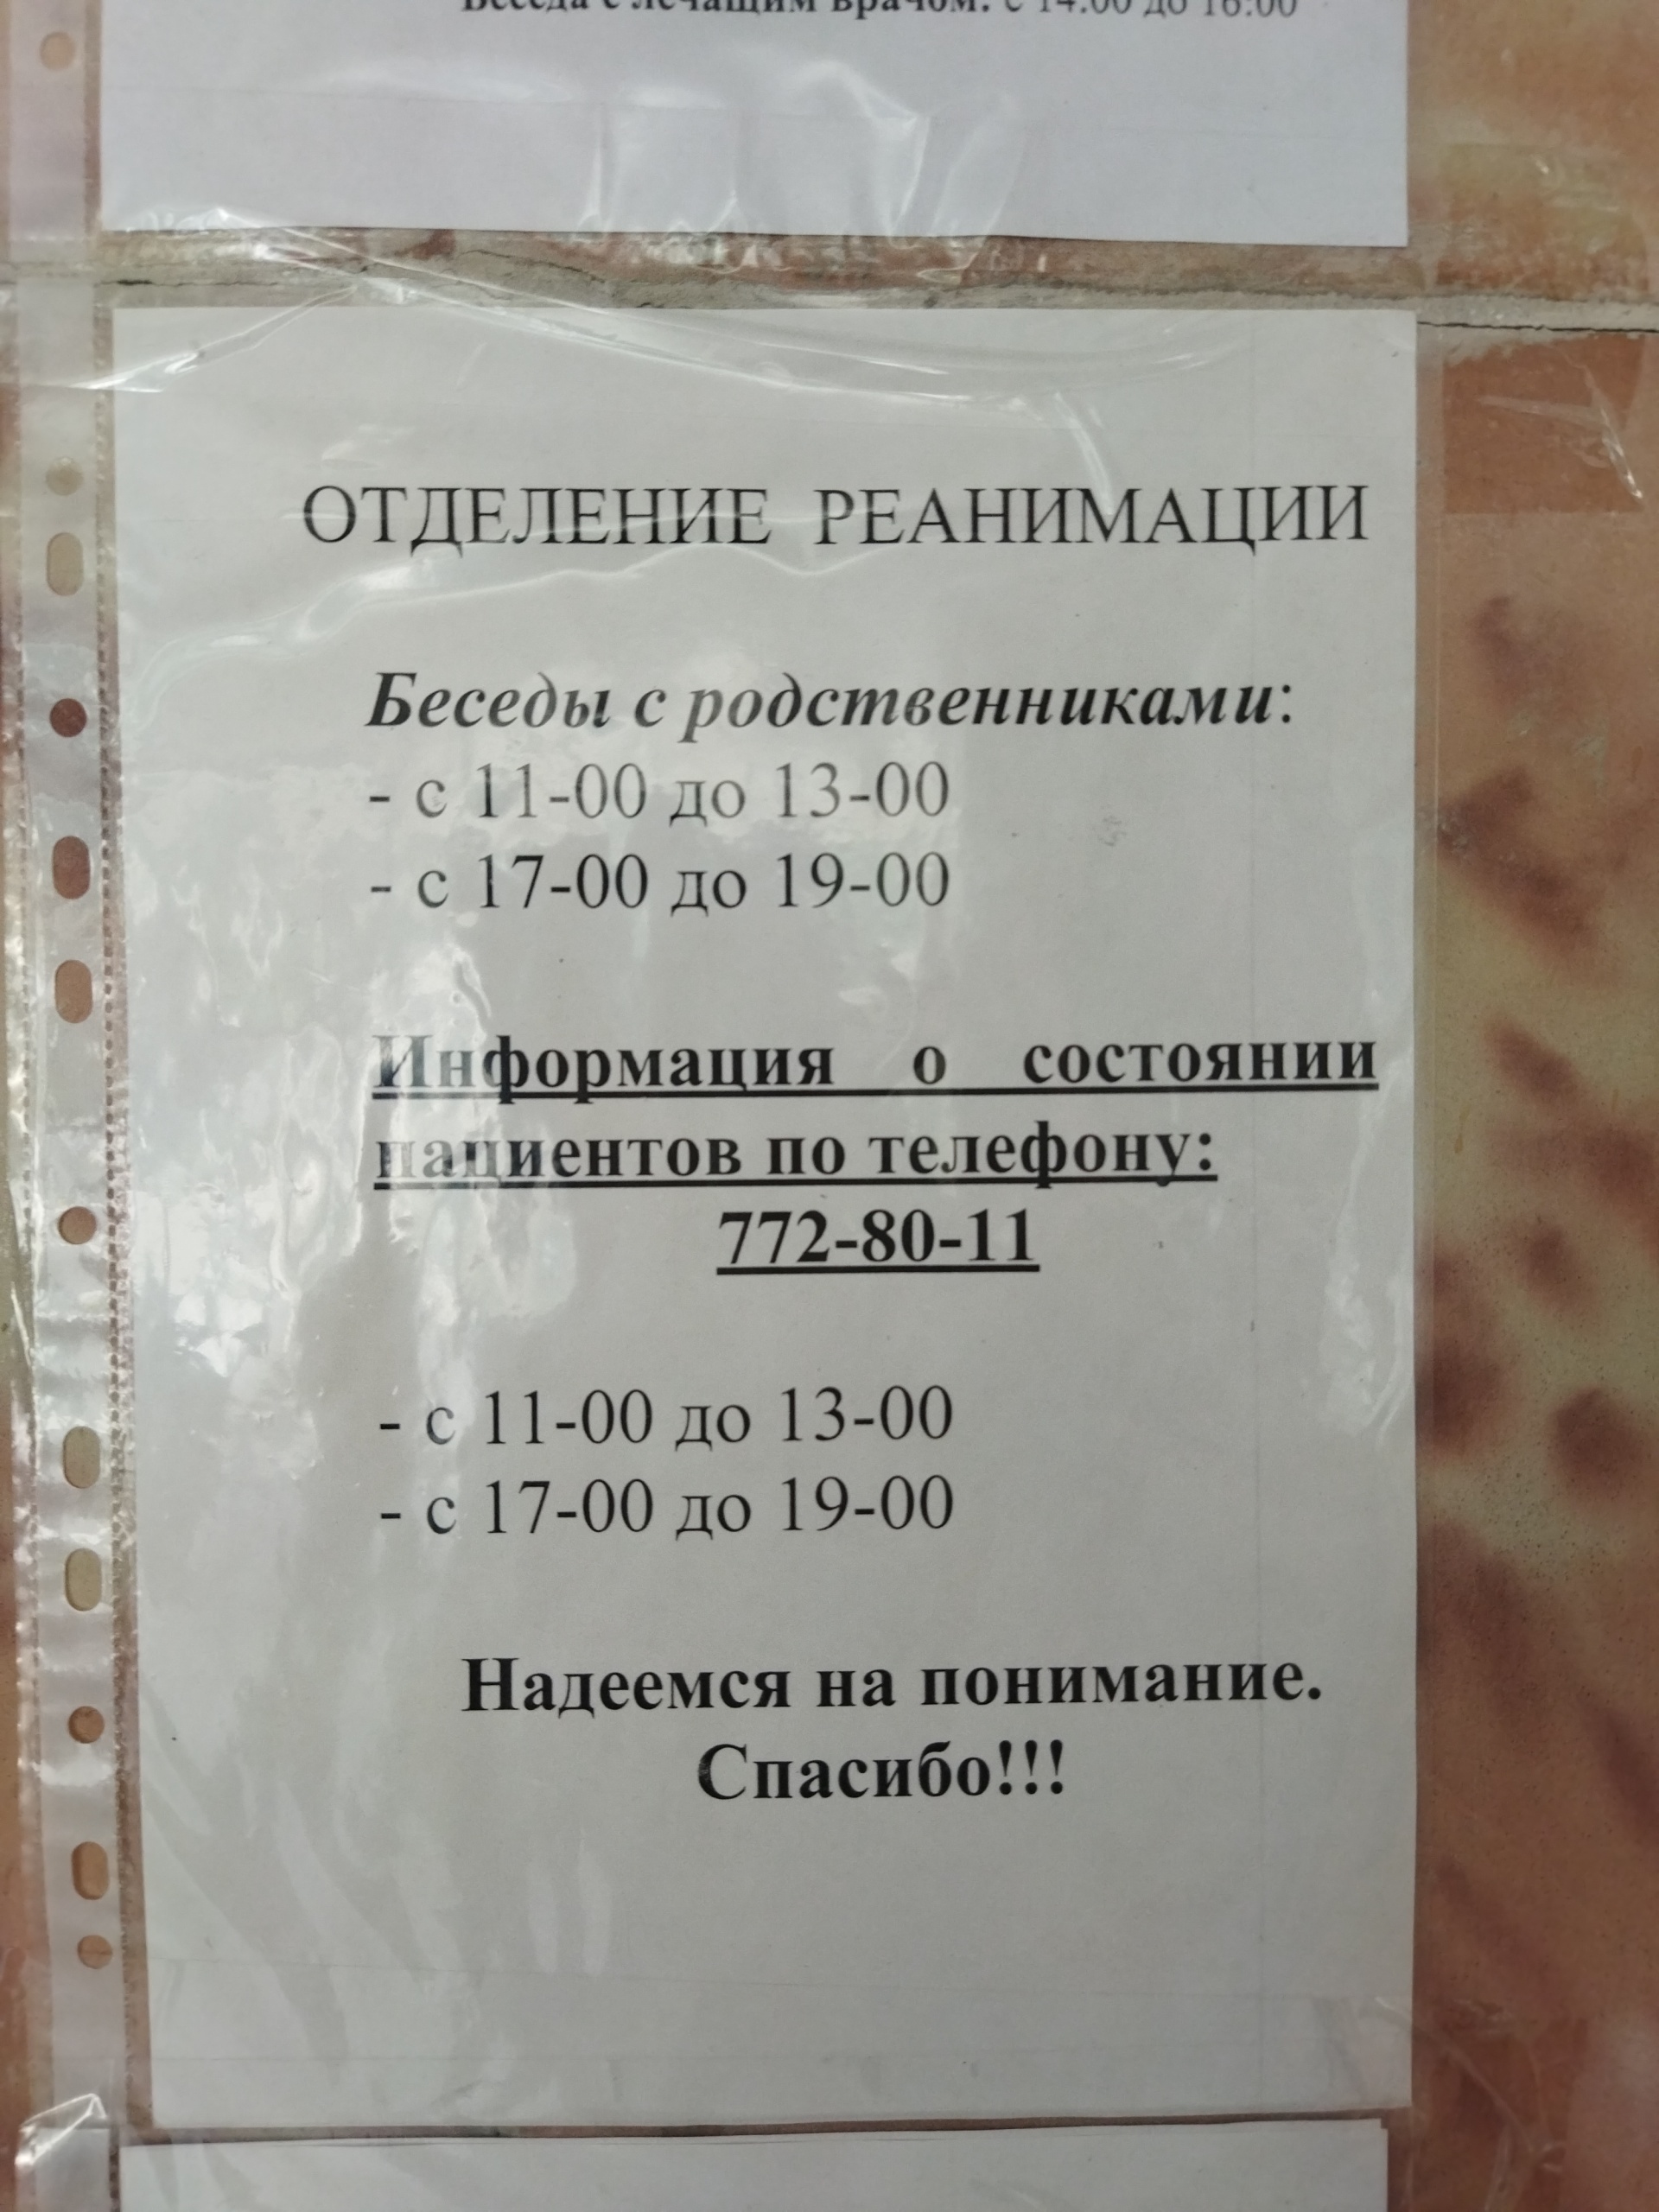 Номер телефона стола справок. Стол справок поликлиника 5 Челябинск.